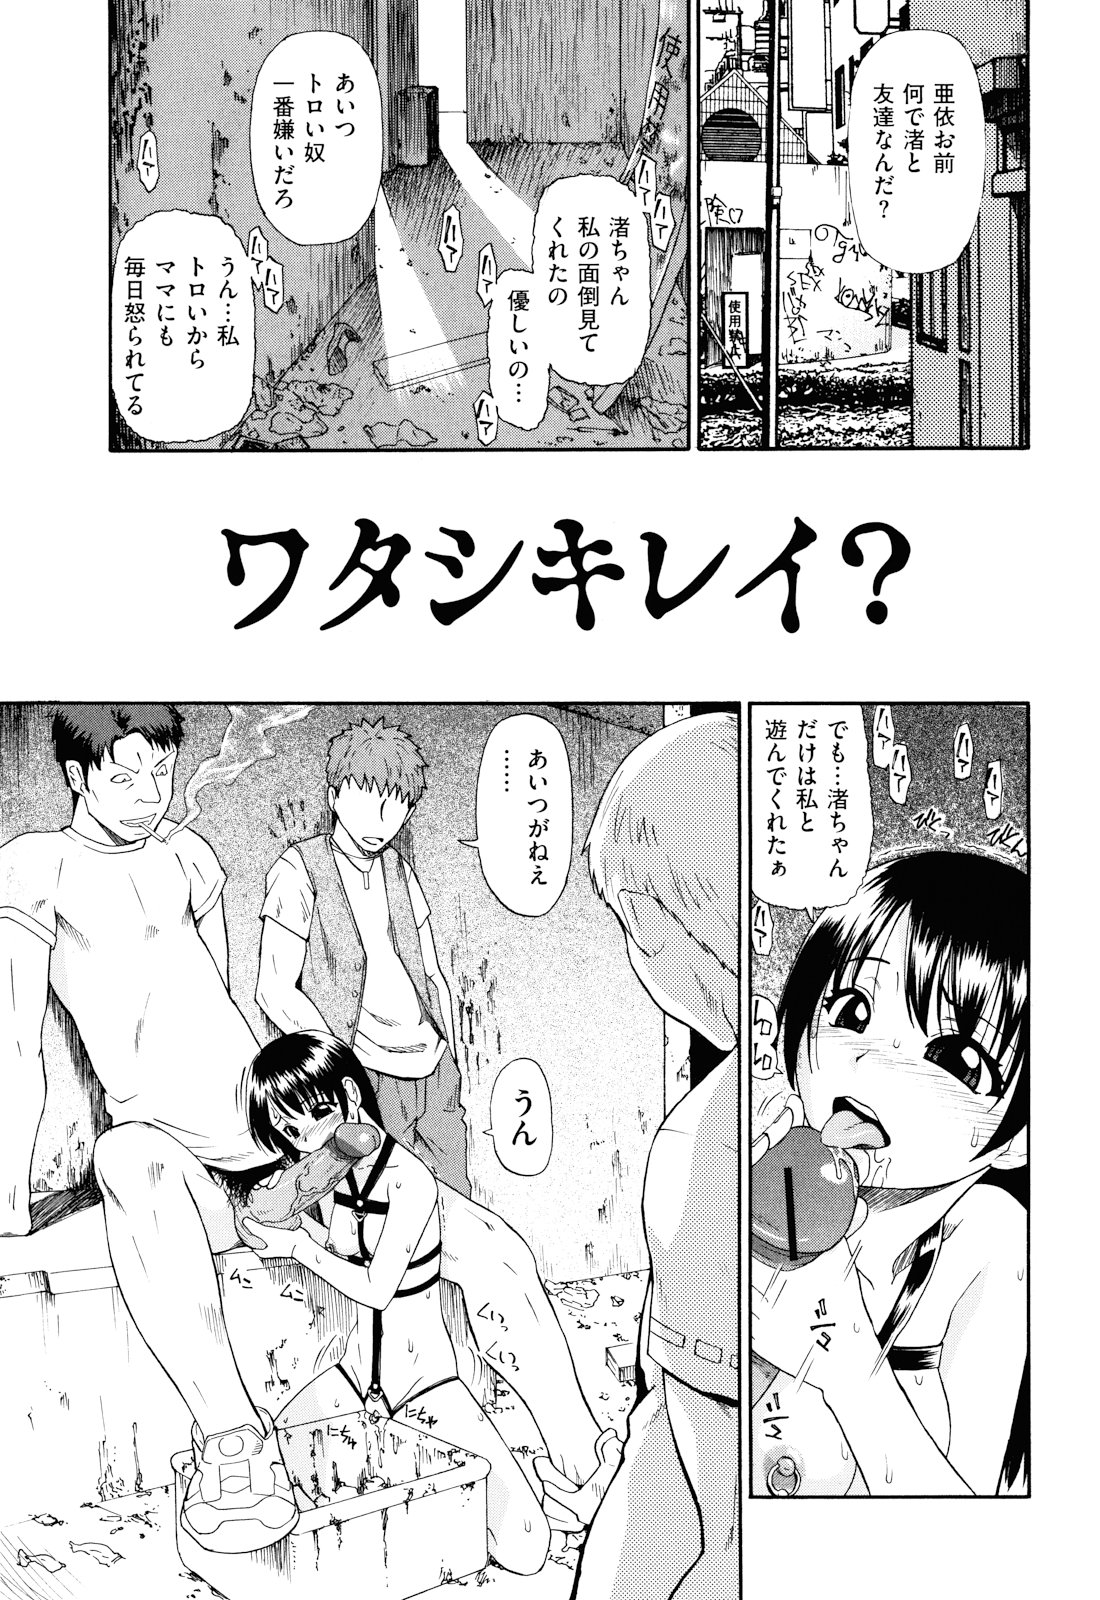 [Oyster] Watashi Kirei? page 28 full